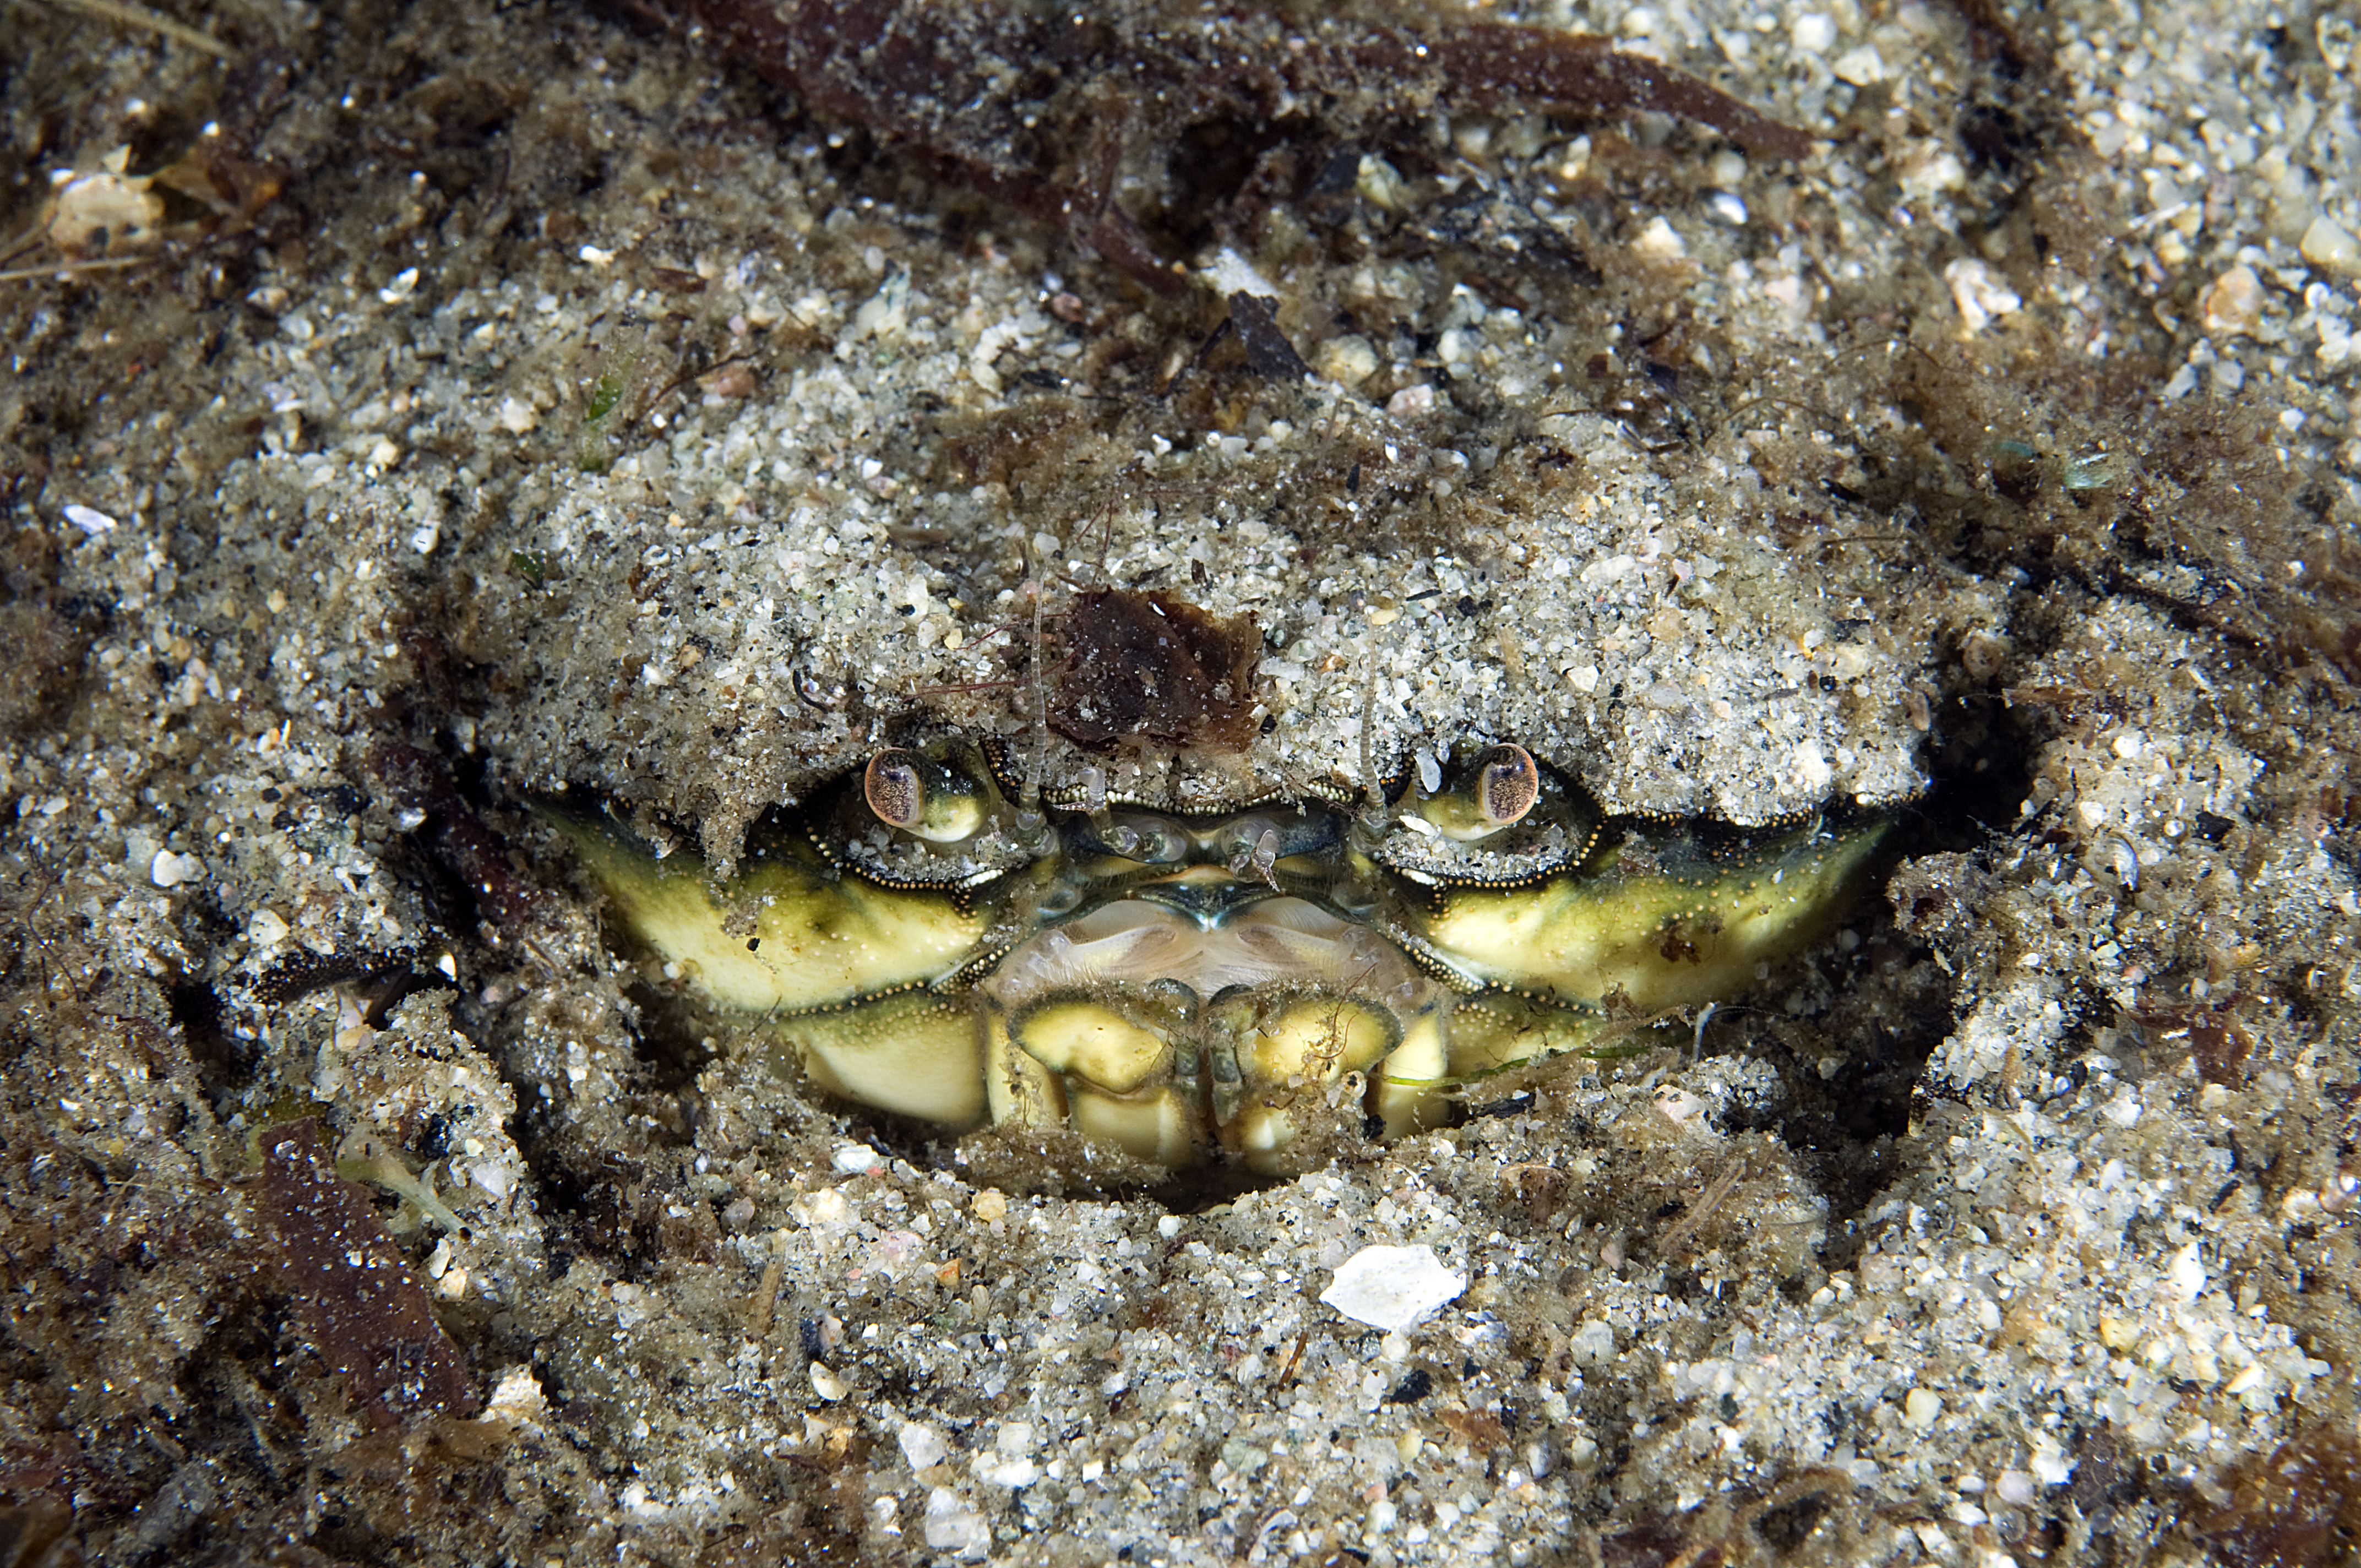 
Øynene og munnen til en strandkrabbe er synlig mens den gjemmer seg i sandbunnen